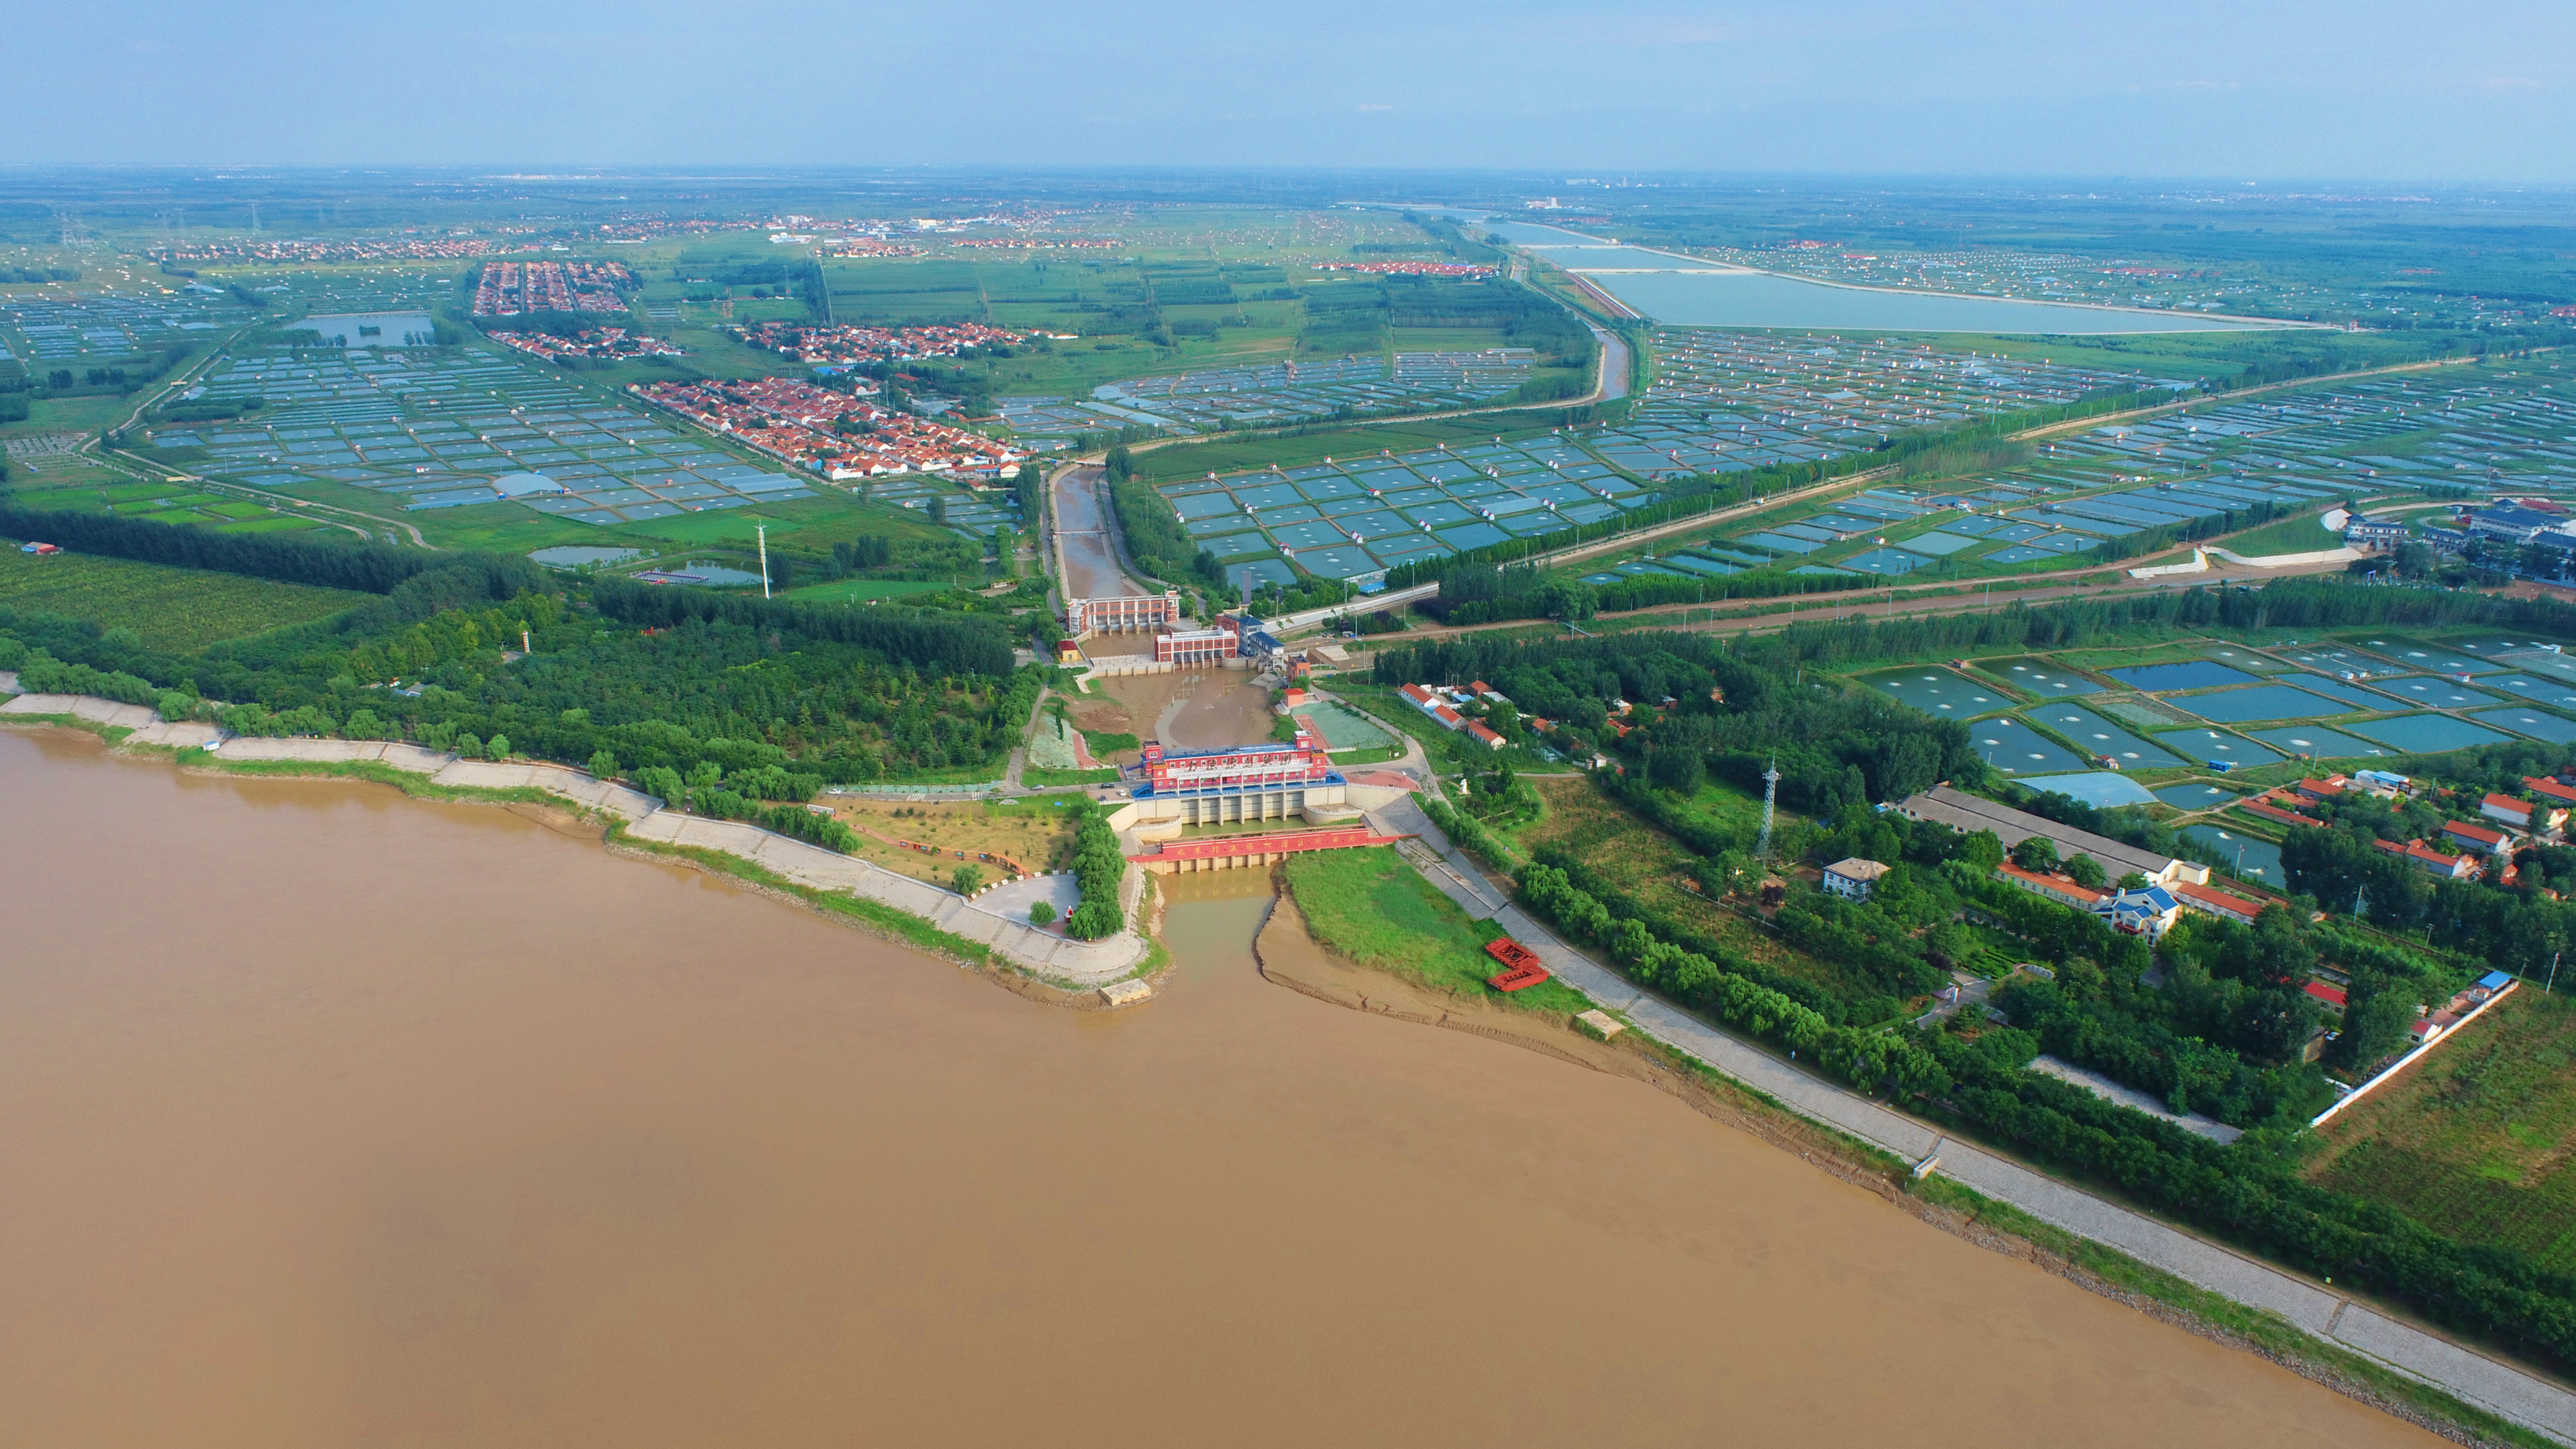 黄河时代 滨州答卷①始终把生态保护放在首位 打造河美水秀生态长廊